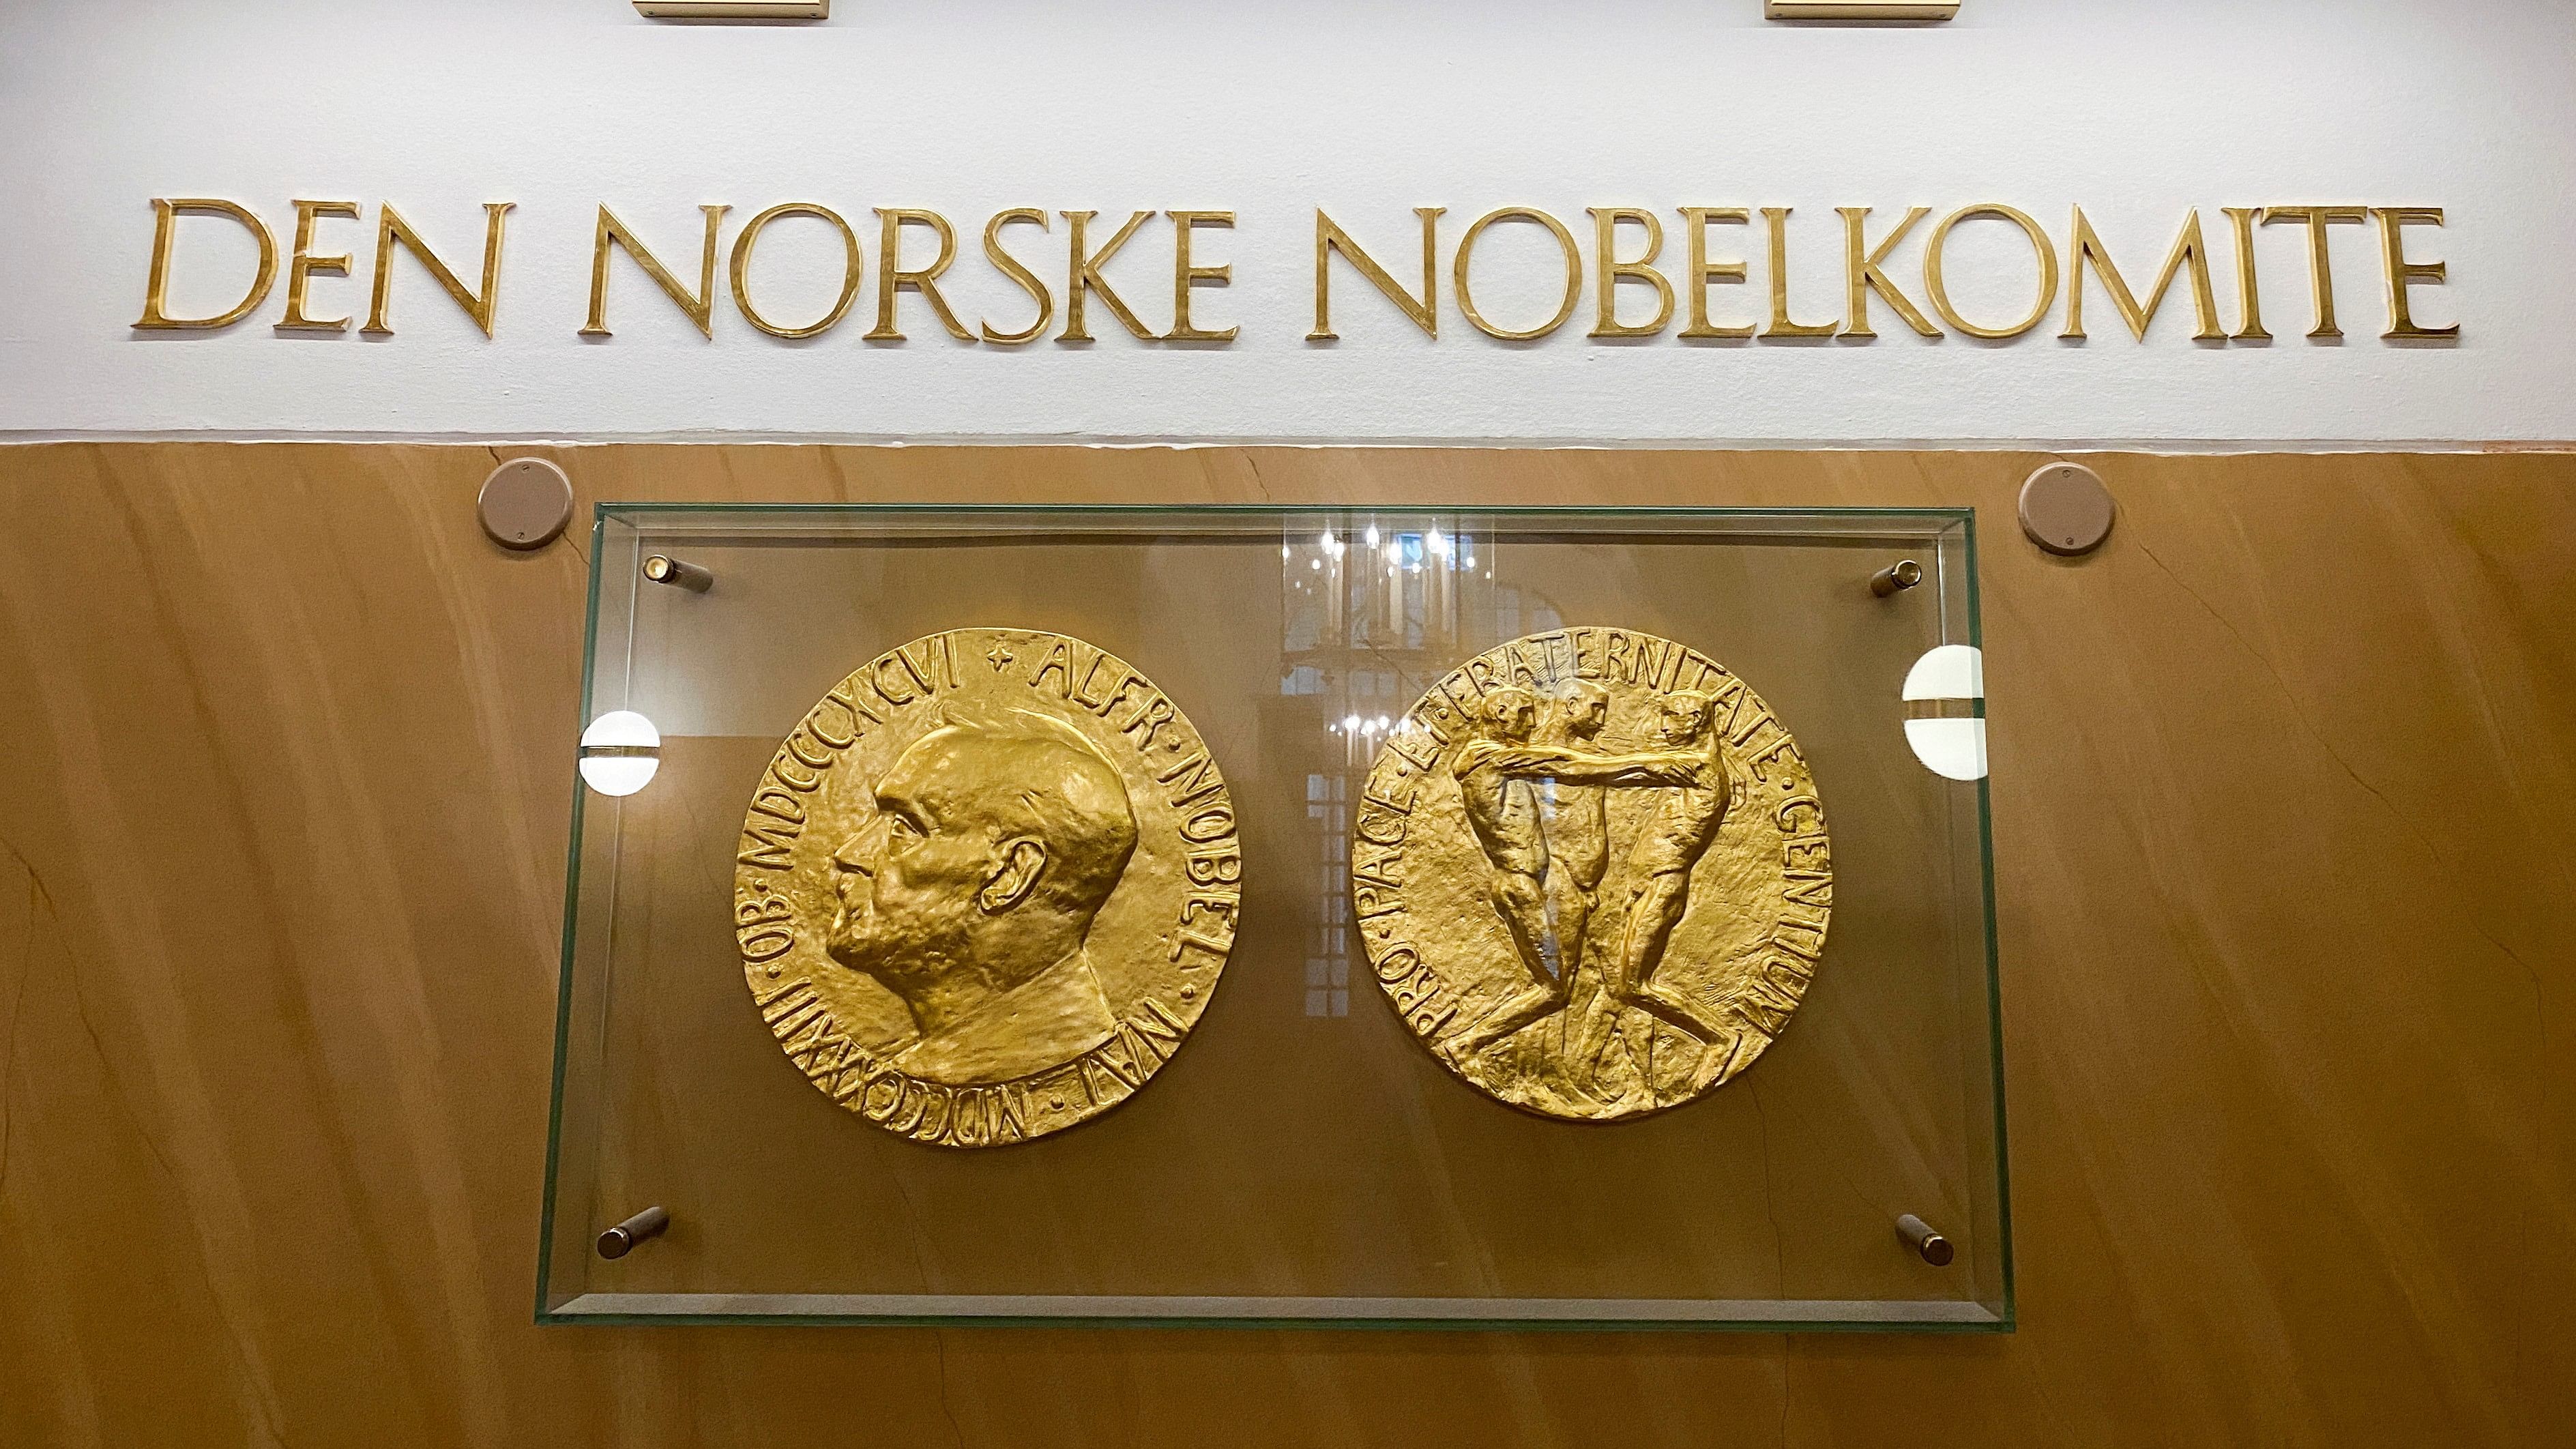 <div class="paragraphs"><p>Representative image of&nbsp;Nobel Prize medals.</p></div>